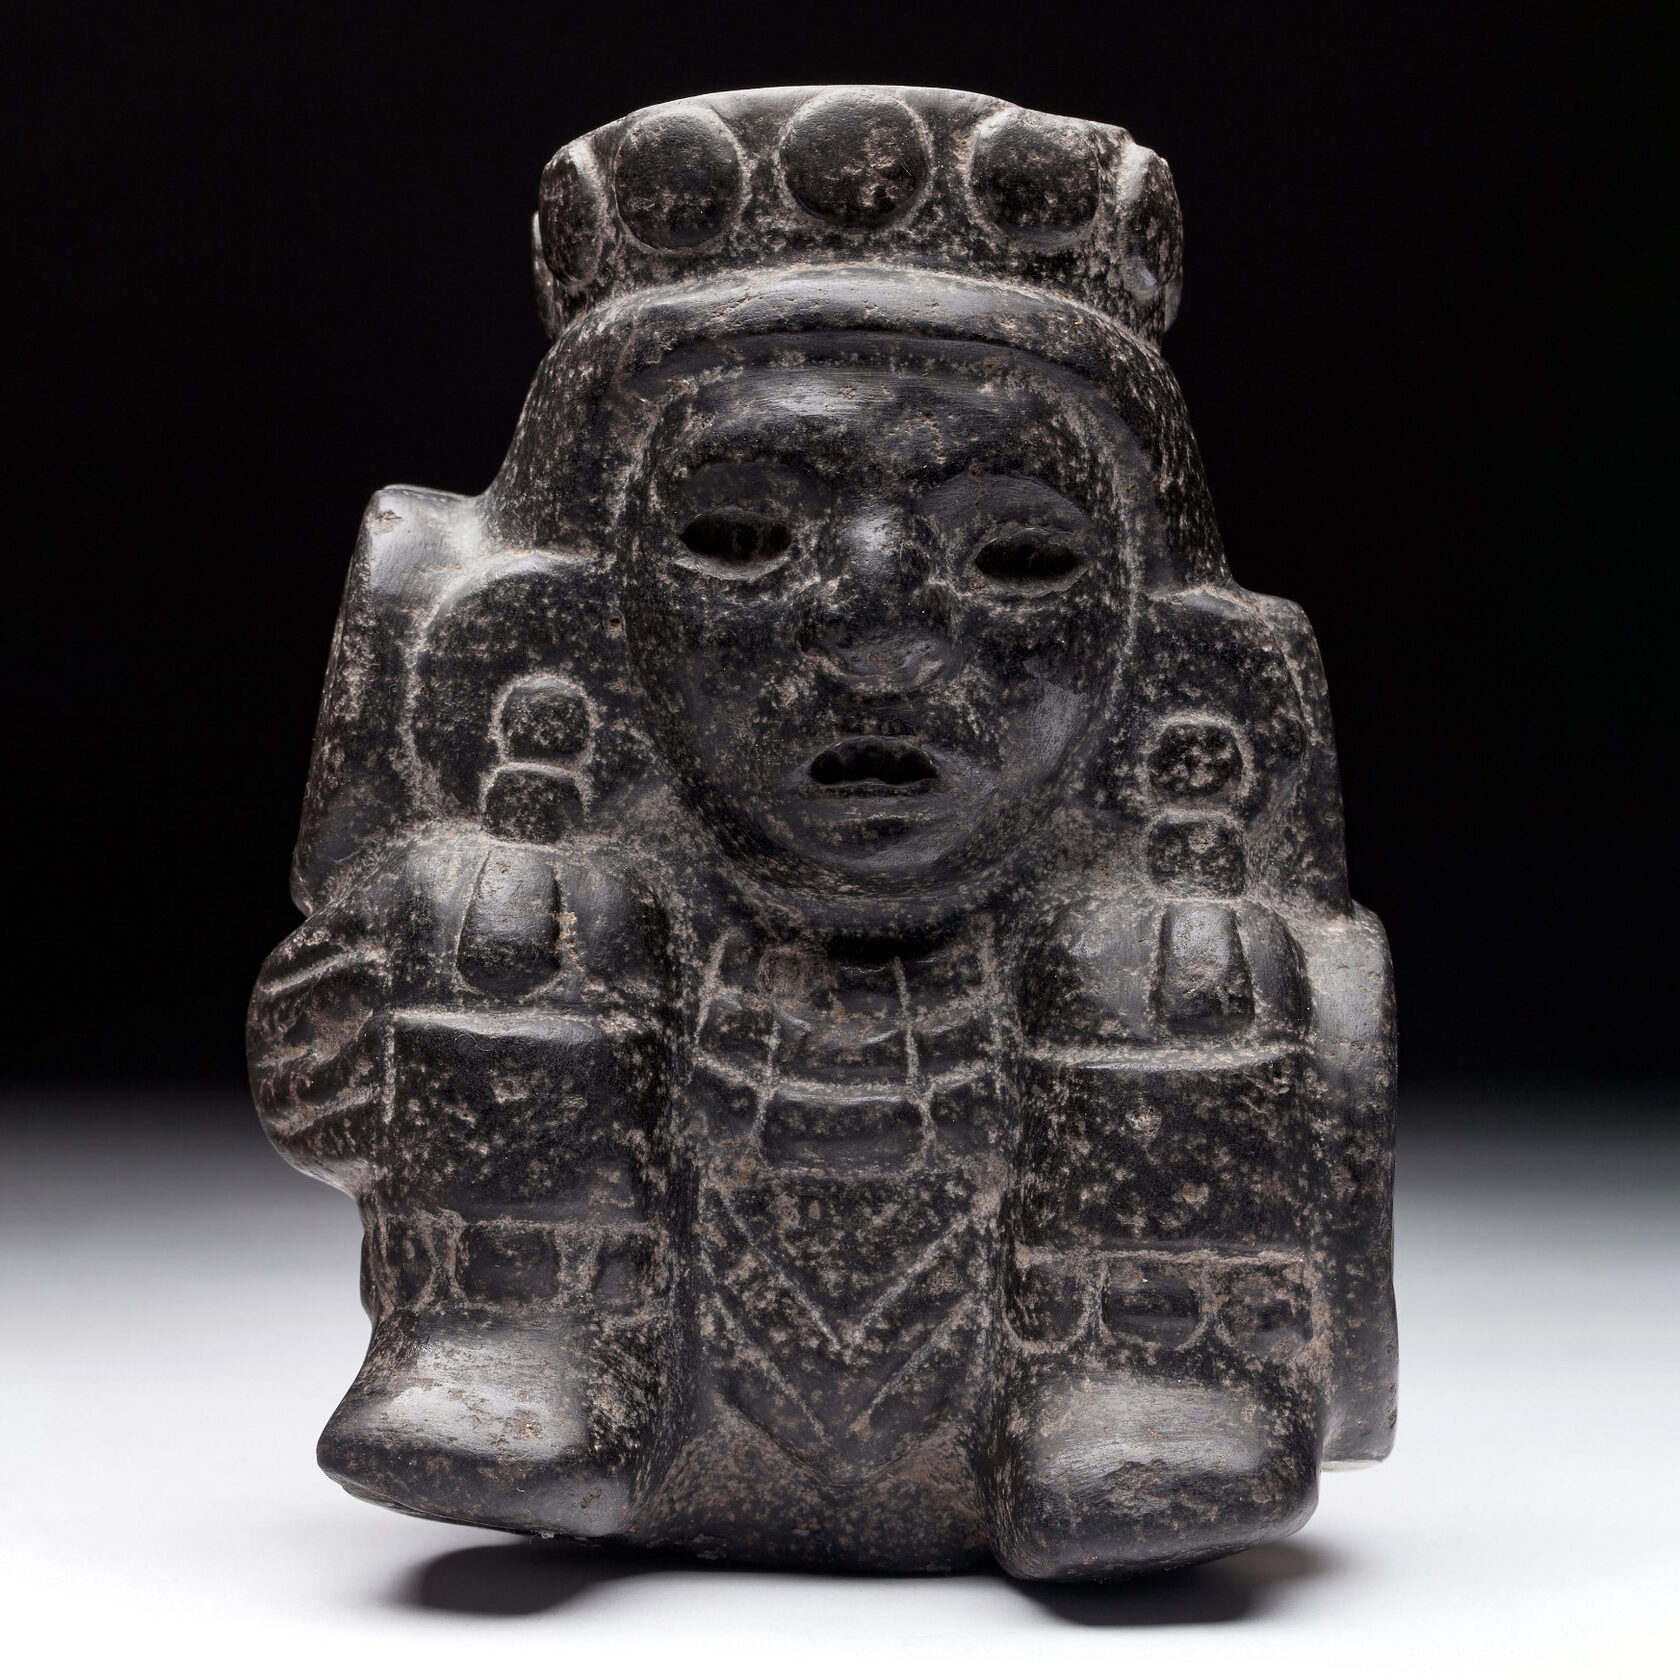 Тескатлипока. Мексика, 1325-1521 гг. н.э. Коллекция Museo Nacional de Antropologia, Мехико.